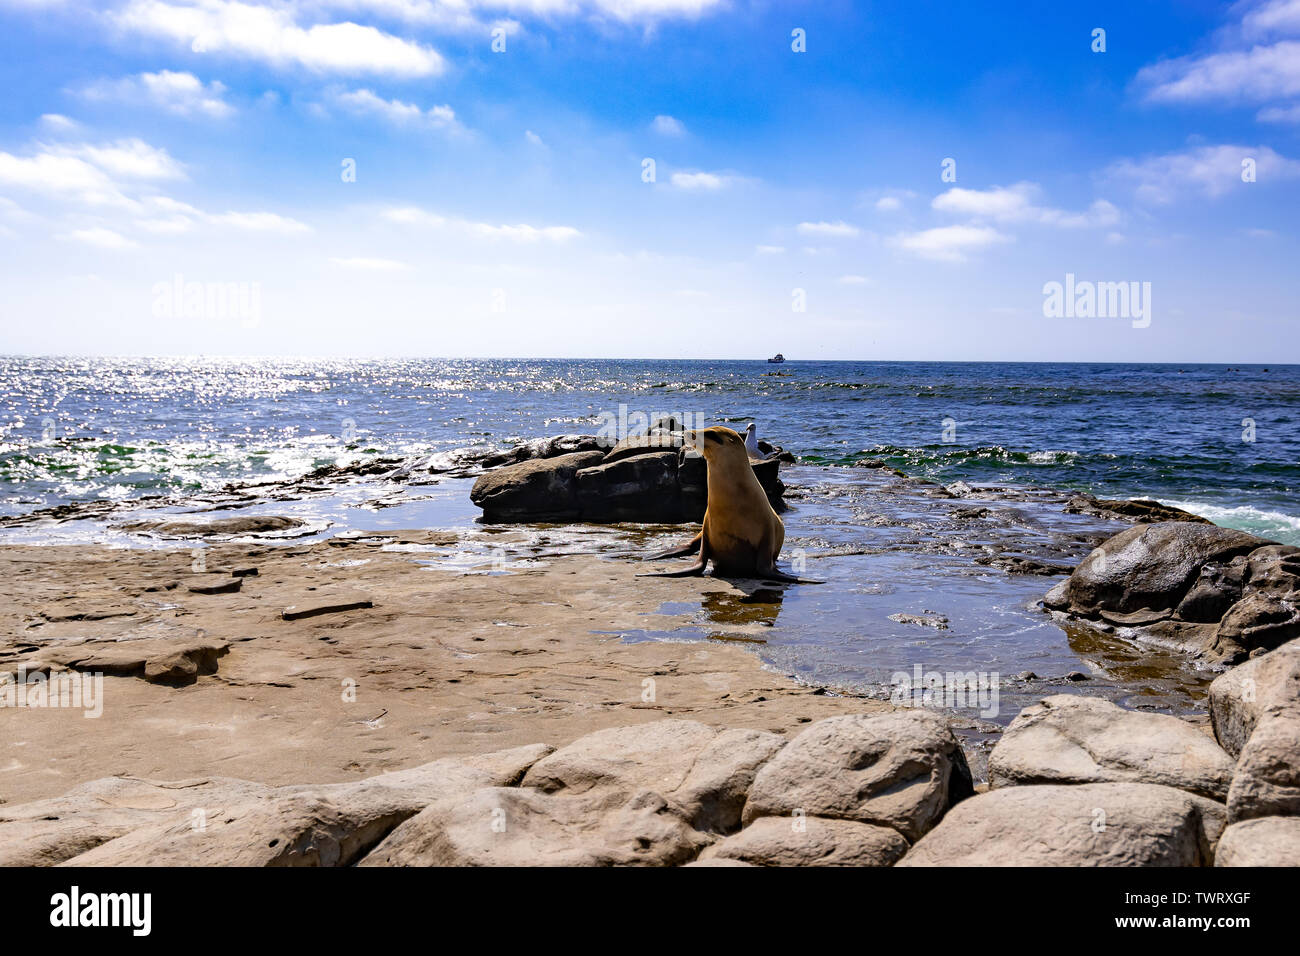 Lobos de mar de Sandiego Foto de stock